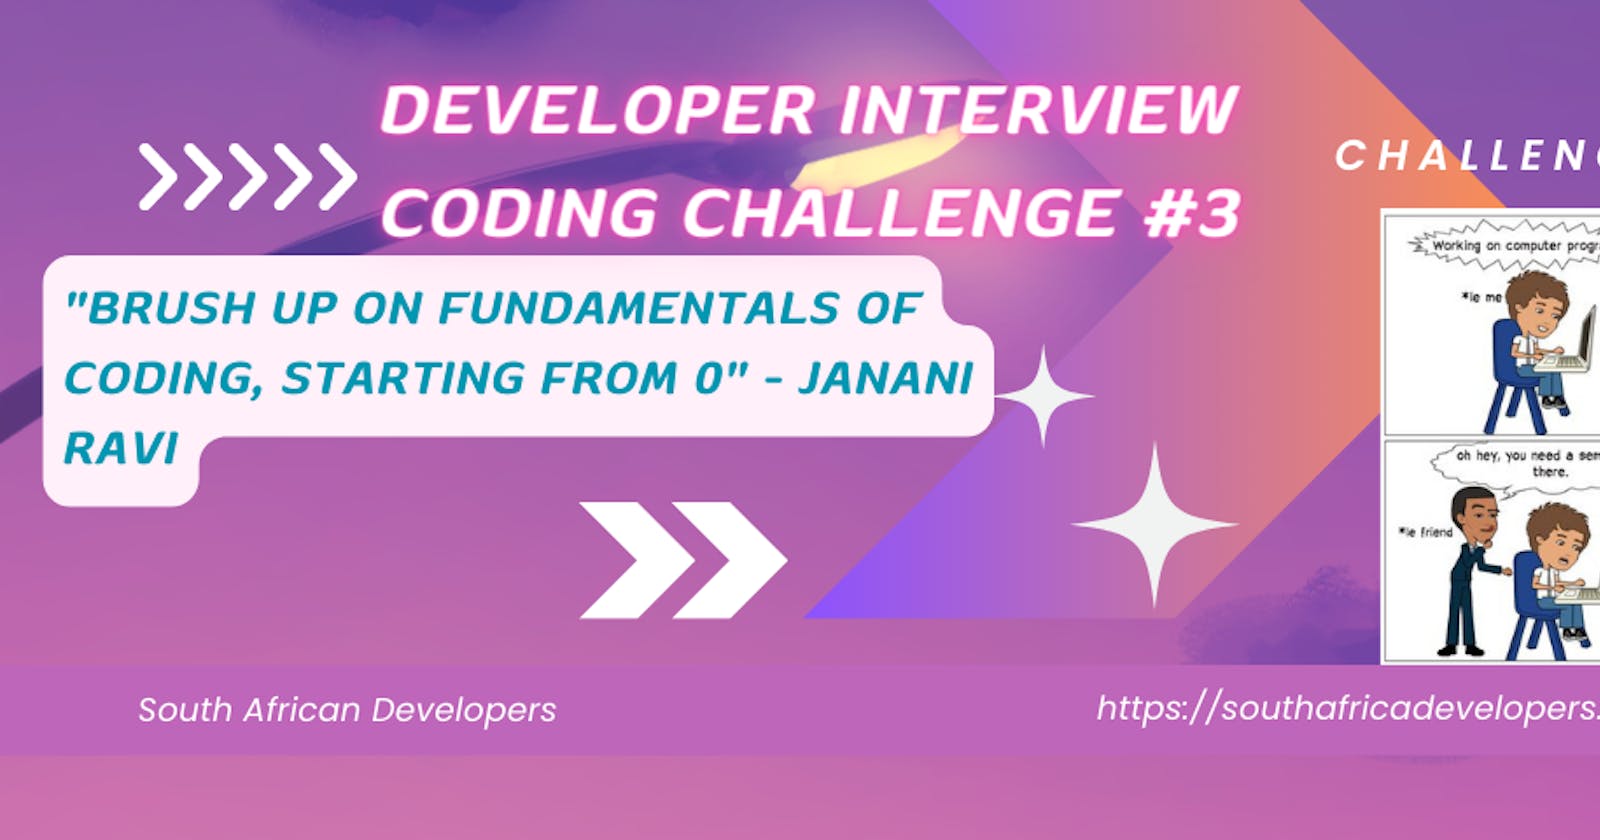 Developer/Coding Interview Challenge #3